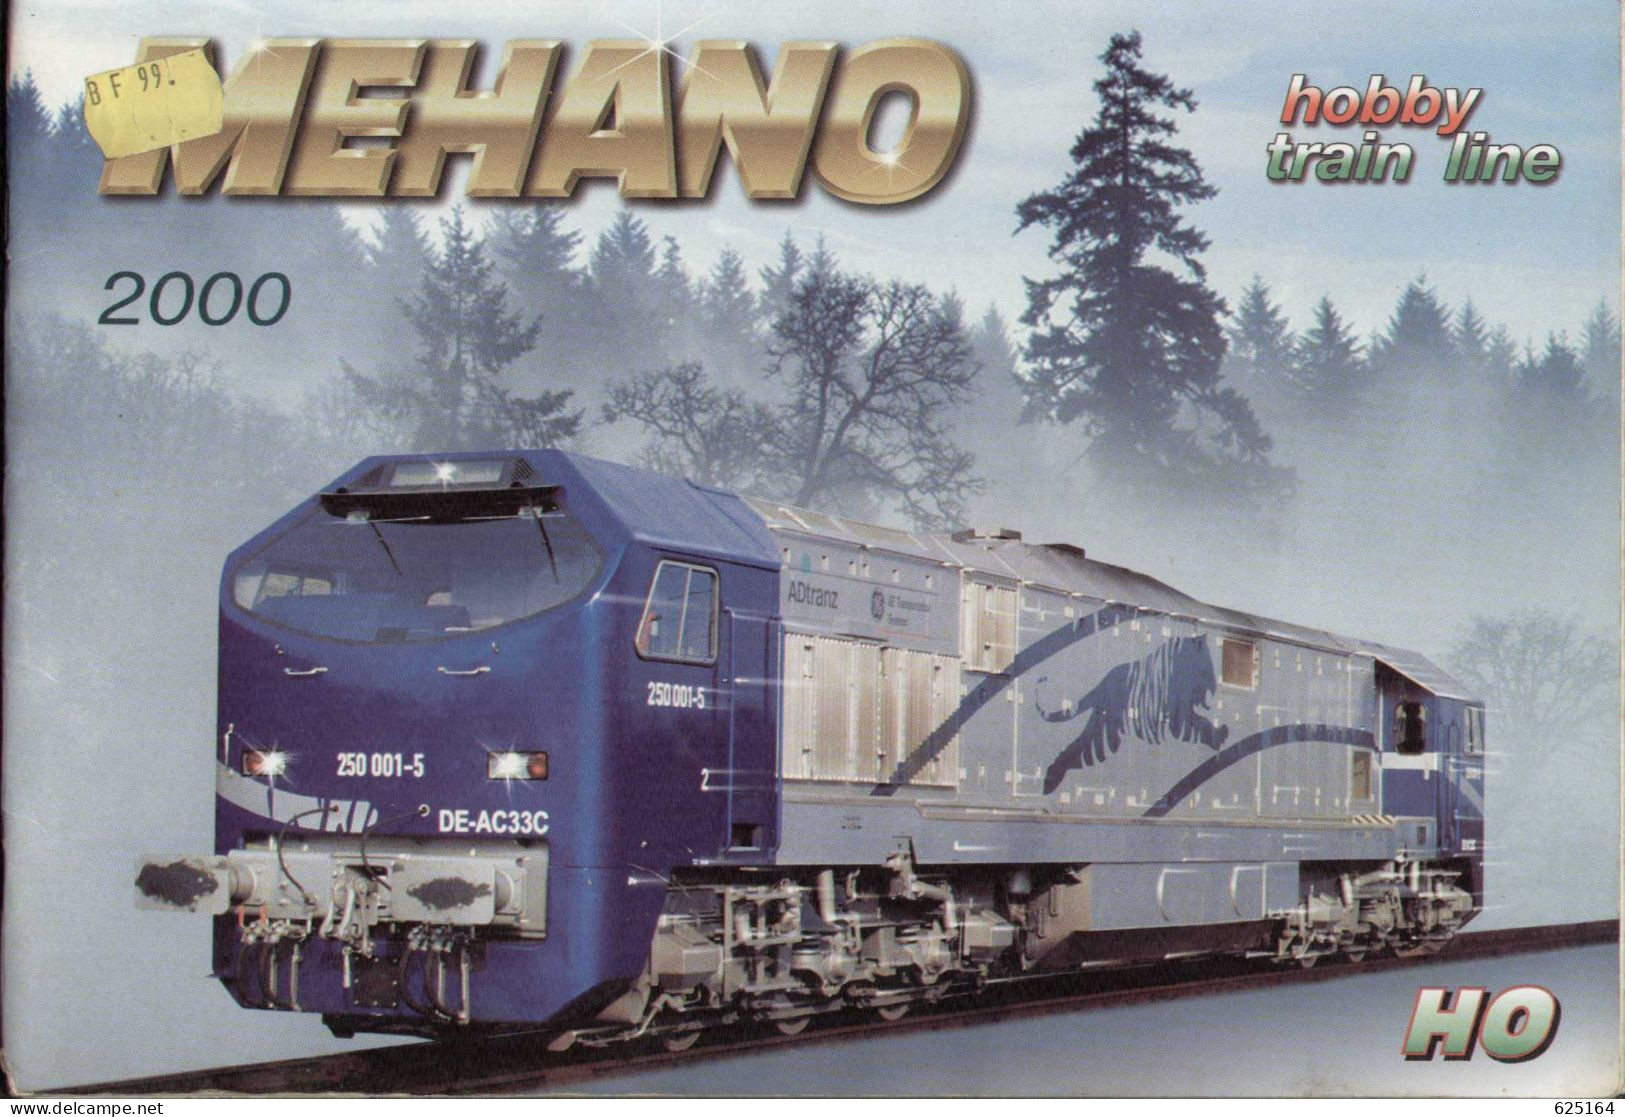 Catalogue MEHANO 2000 HO 1/87 -  Hobby - Train Line - En Slovène, Anglais, Allemand, Italien Et Français - Francés